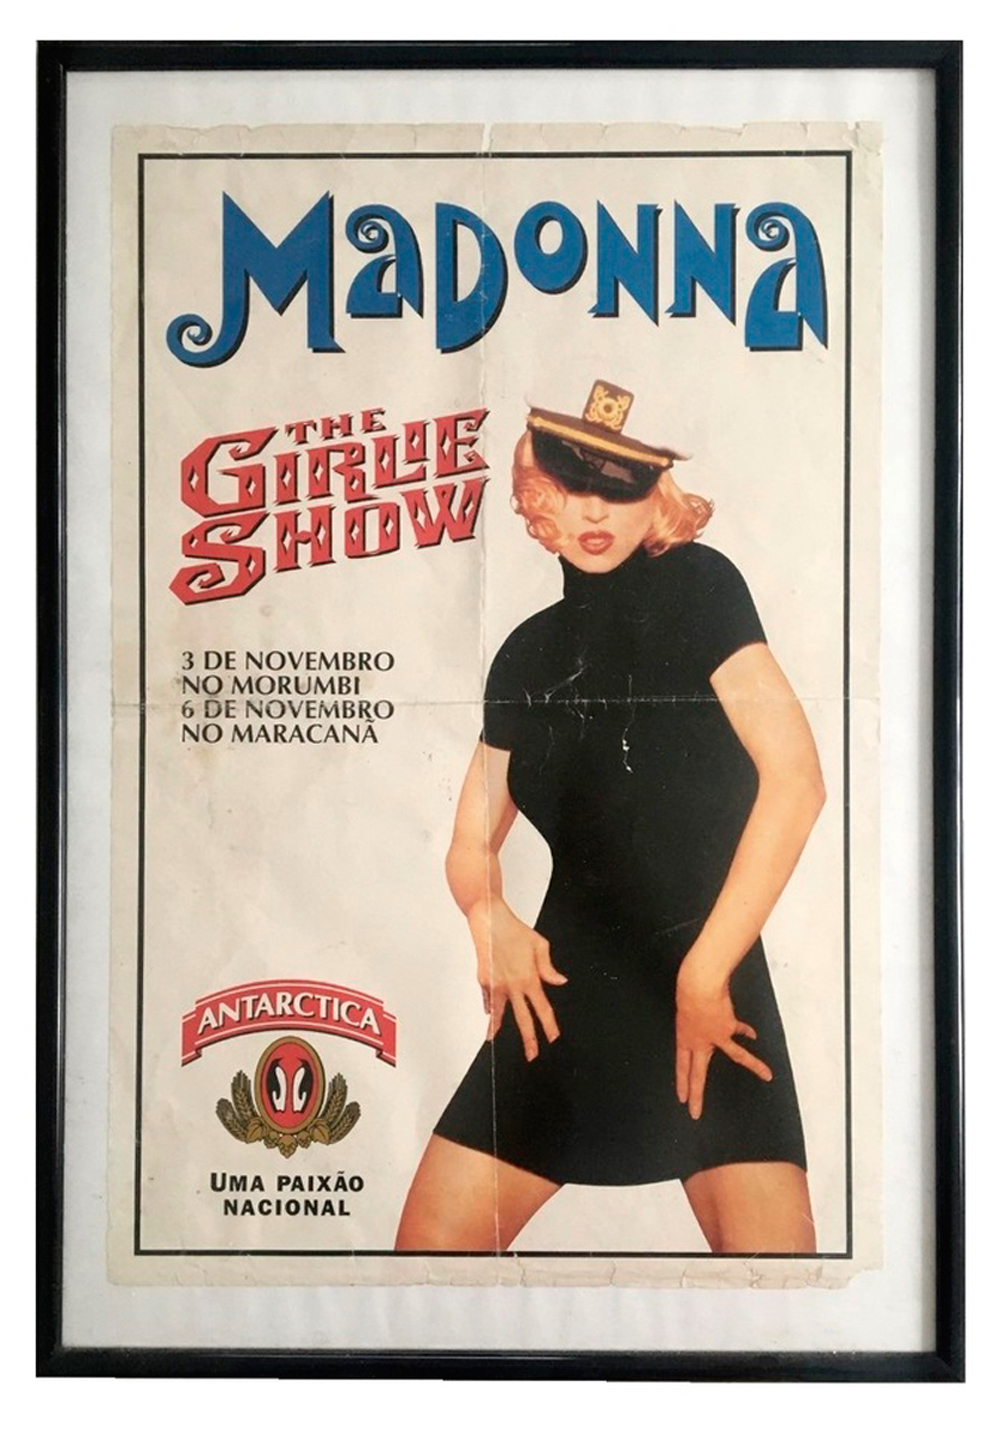 1993 - The Girlie Show, no Maracanã